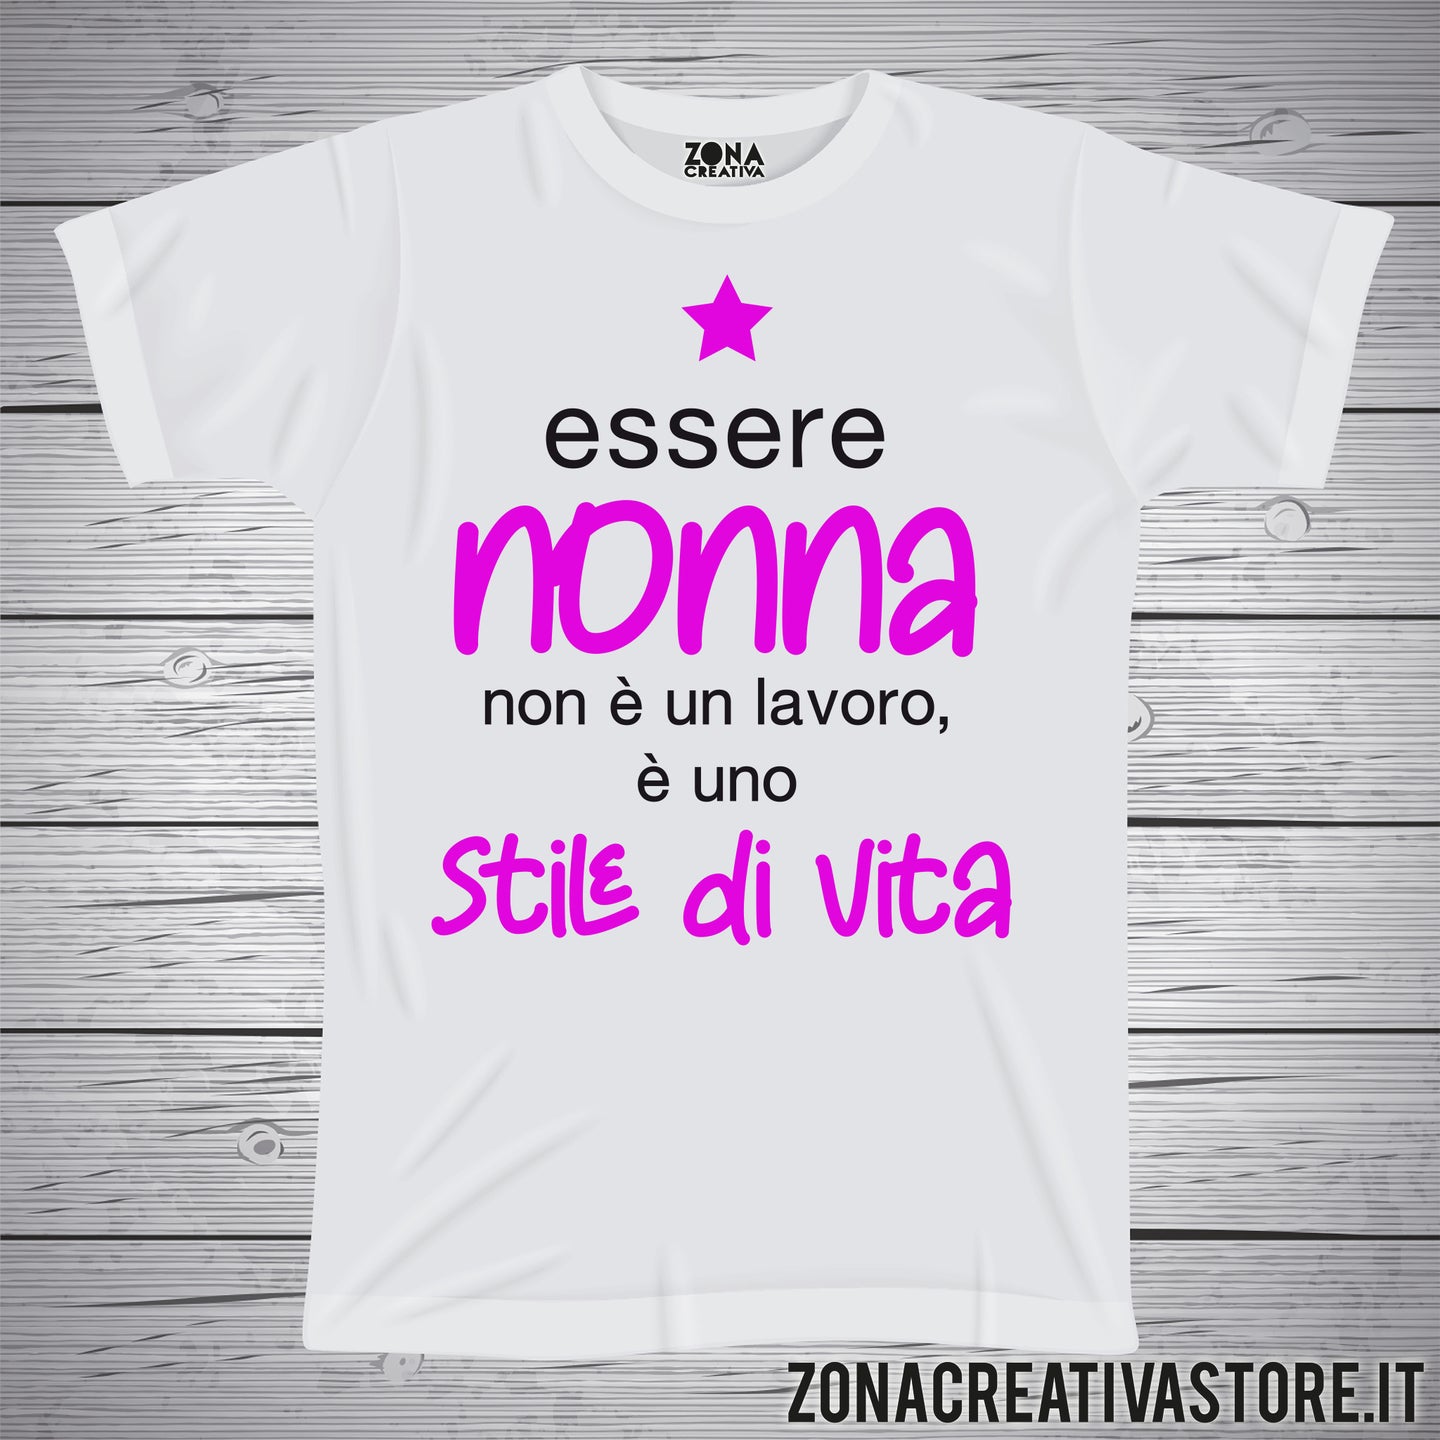 T-shirt con frasi sui nonni NONNA STILE DI VITA